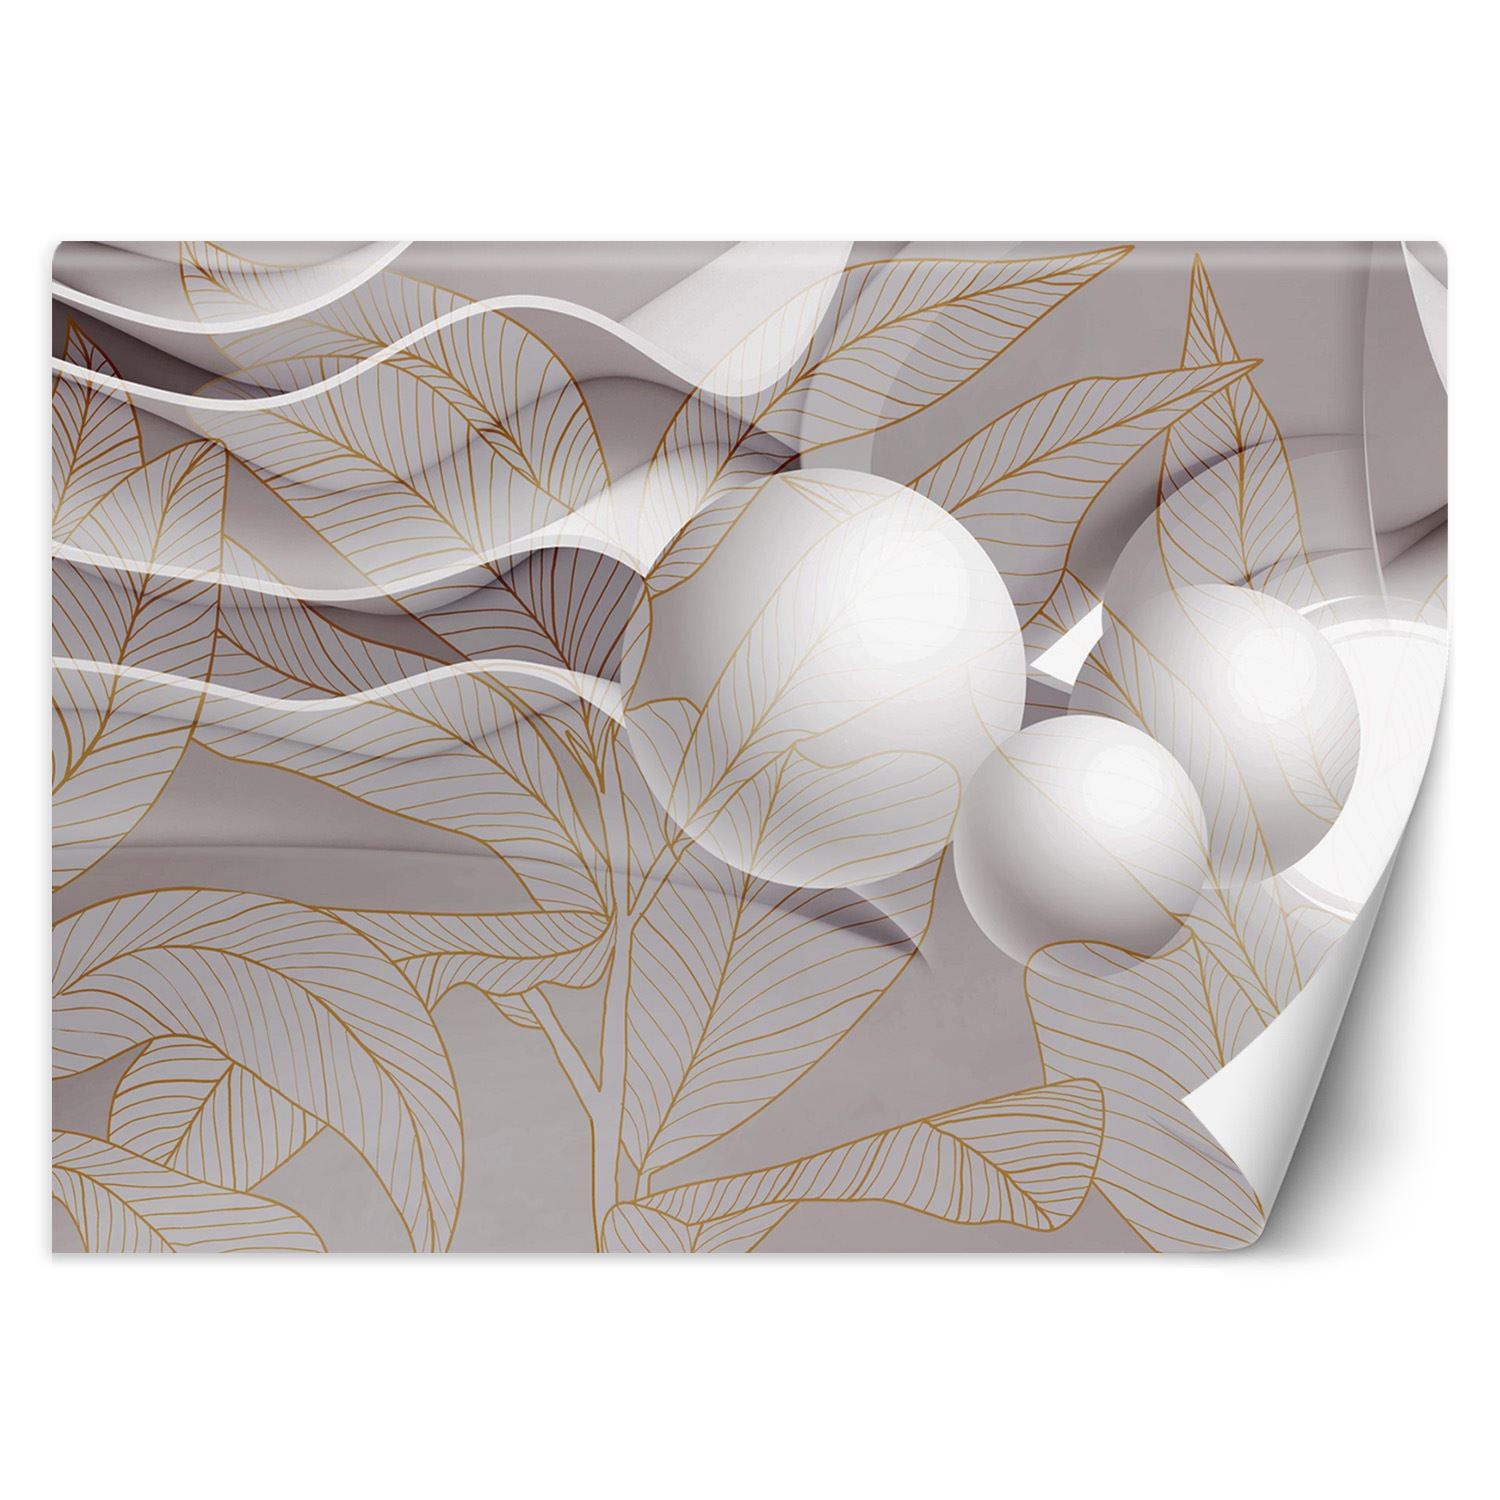 Trend24 – Behang – Goudbladeren En Bollen 3D – Behangpapier – Fotobehang 3D – Behang Woonkamer – 200x140x2 cm – Incl. behanglijm